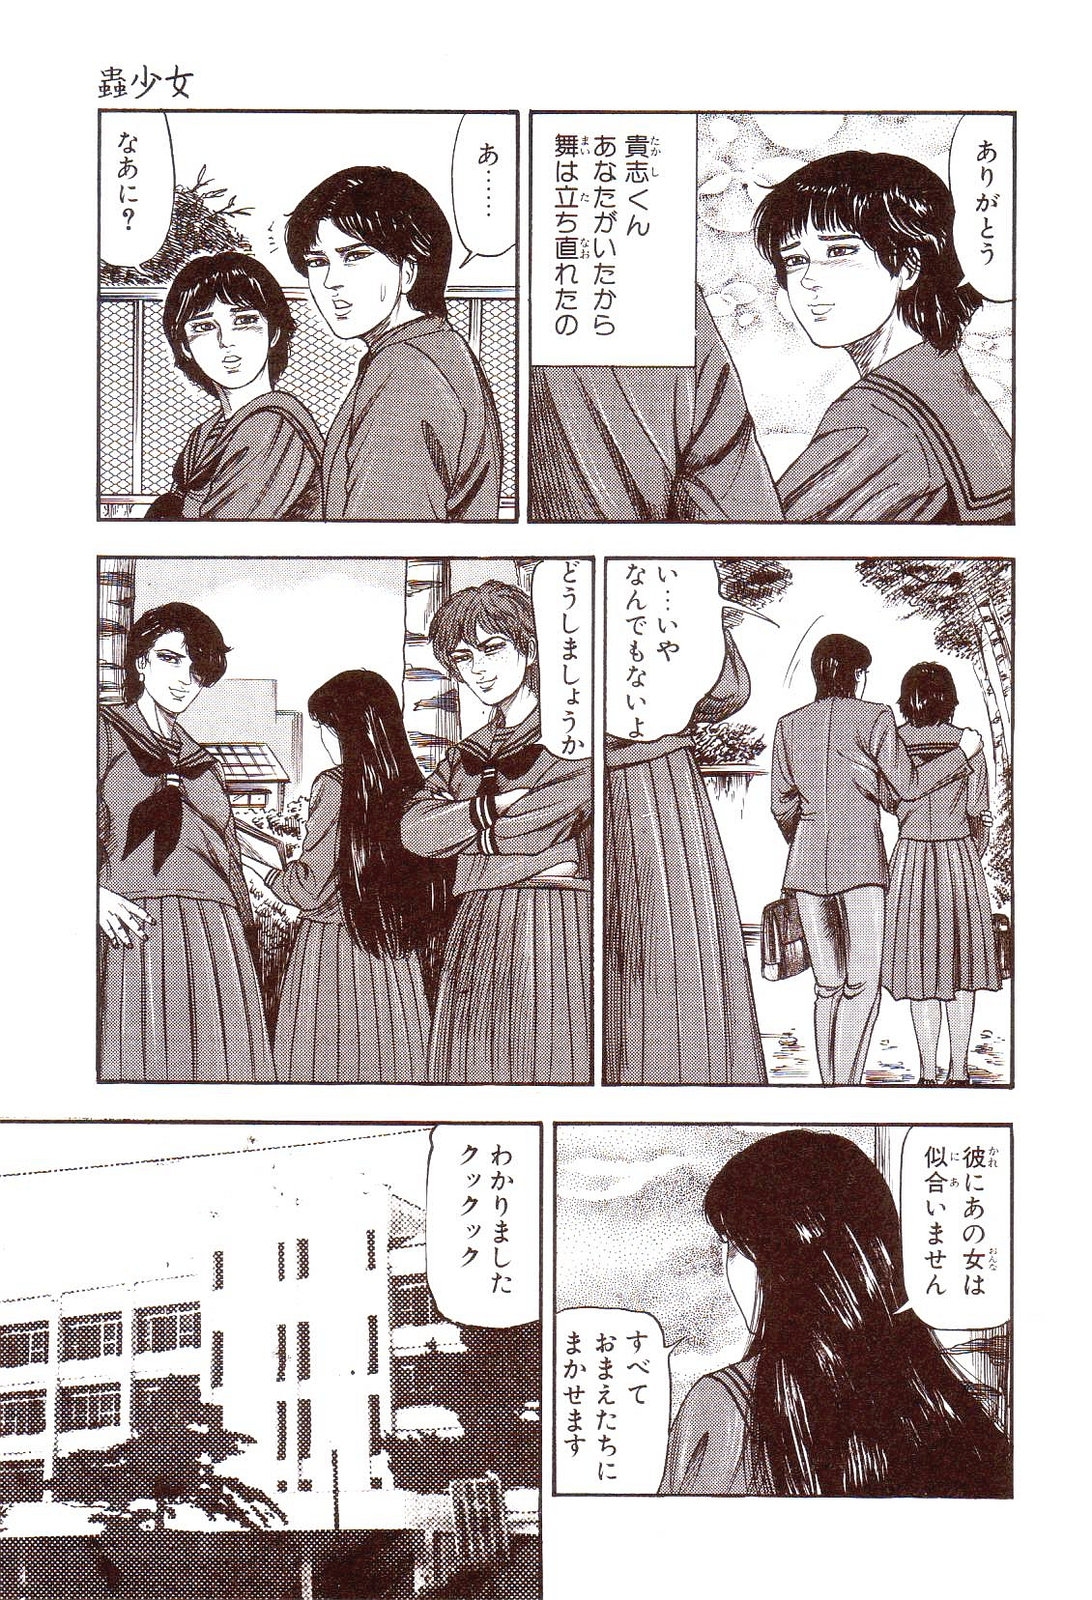 [Sanjou Tomomi] Inu ni Naritai -kyoufu manga shugyoku sakuhinshiyuu- 57